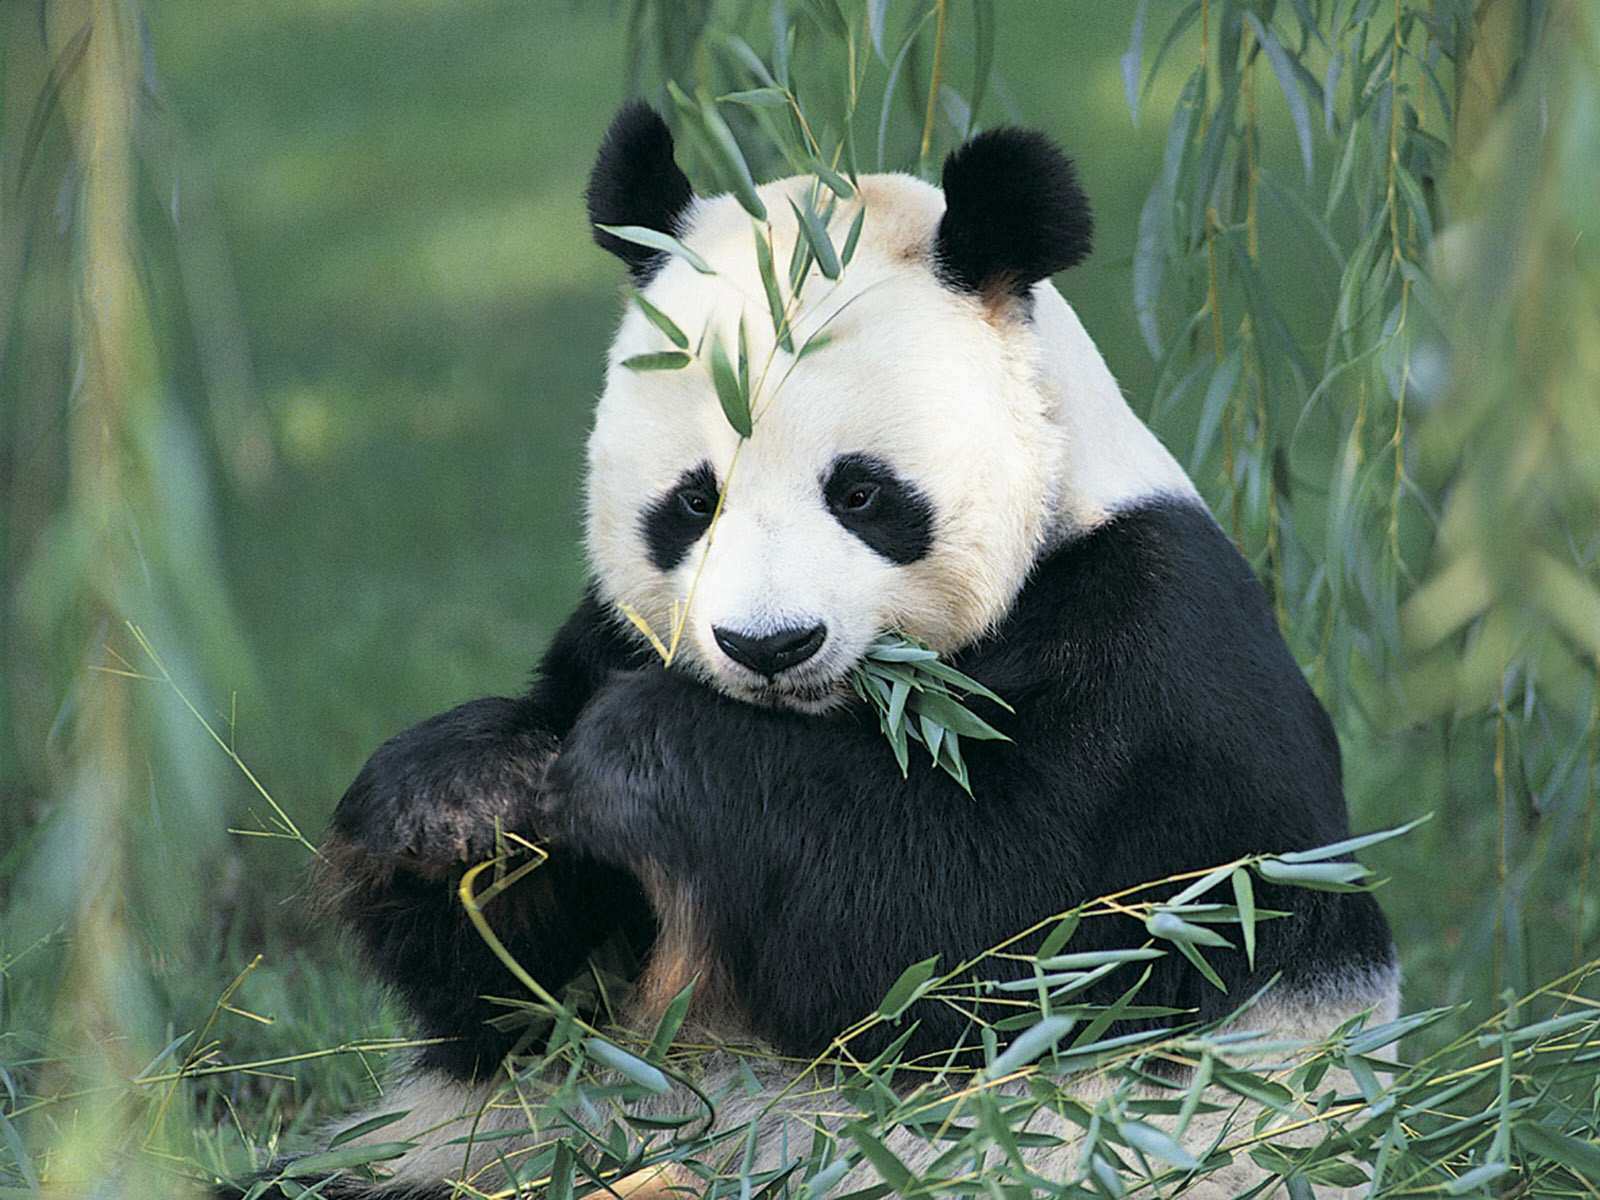 Cute Panda Bears - Chordata Mammals - HD Wallpaper 